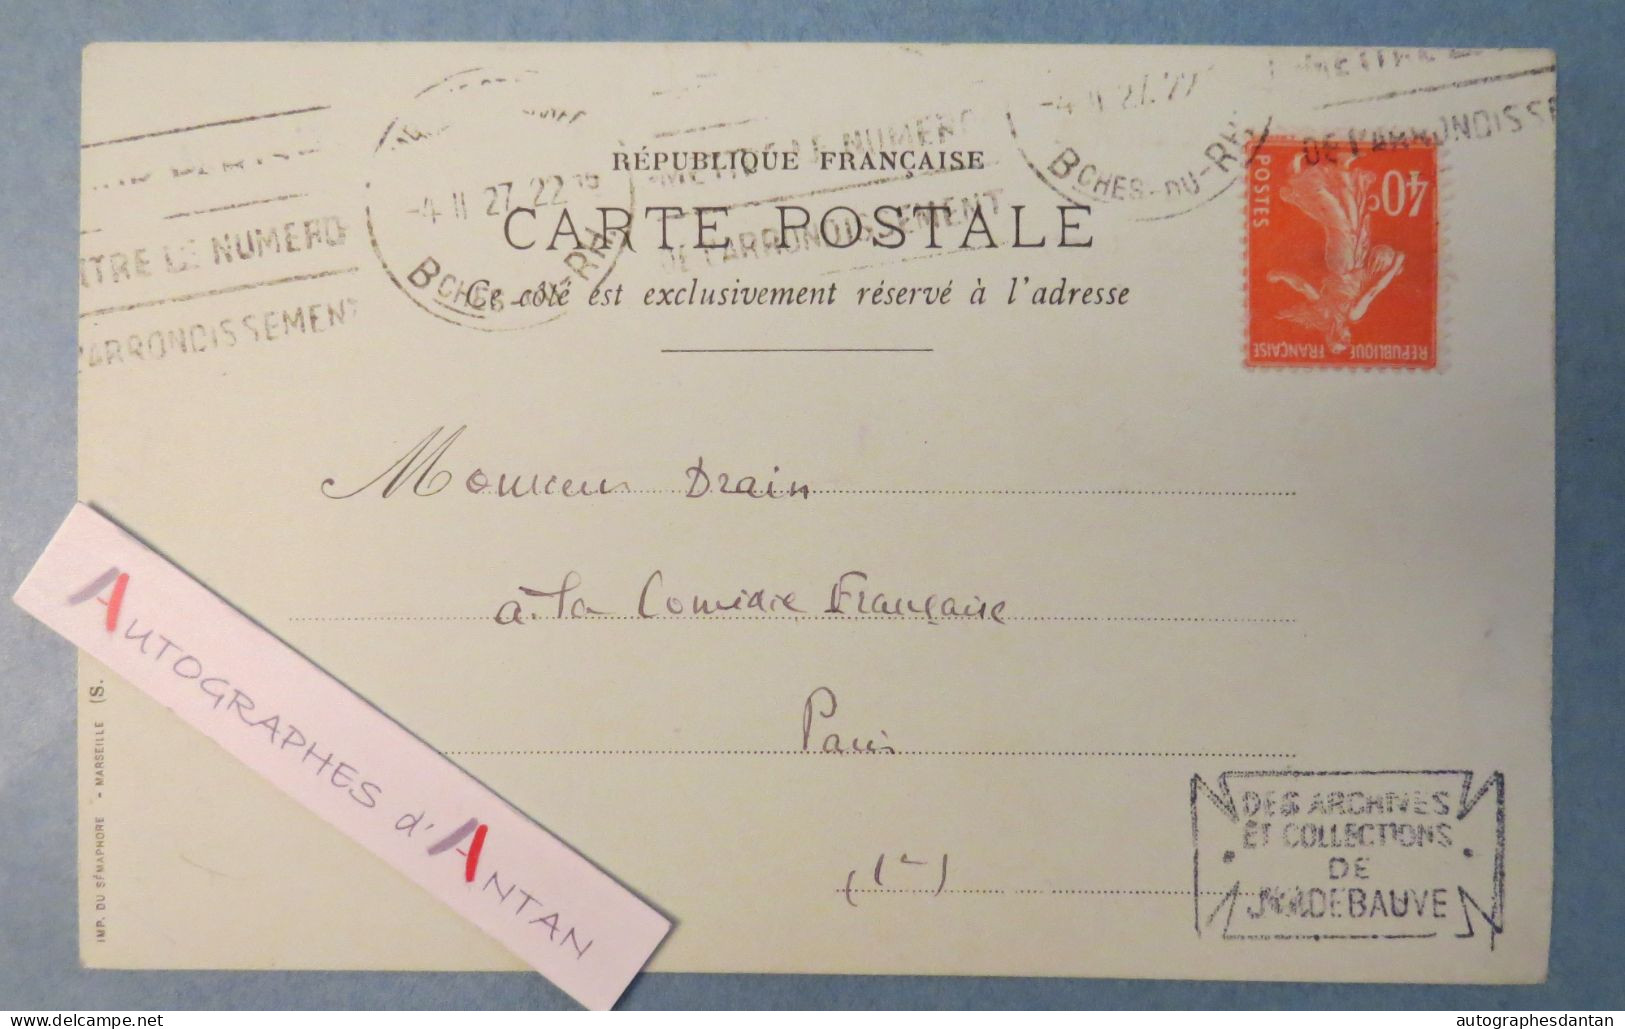 ● Auguste RONDEL Polytechnicien Banquier Bibliothèque De L'Arsenal - Marseille 1921 Carte Lettre Drain Comédie Française - Personajes Historicos